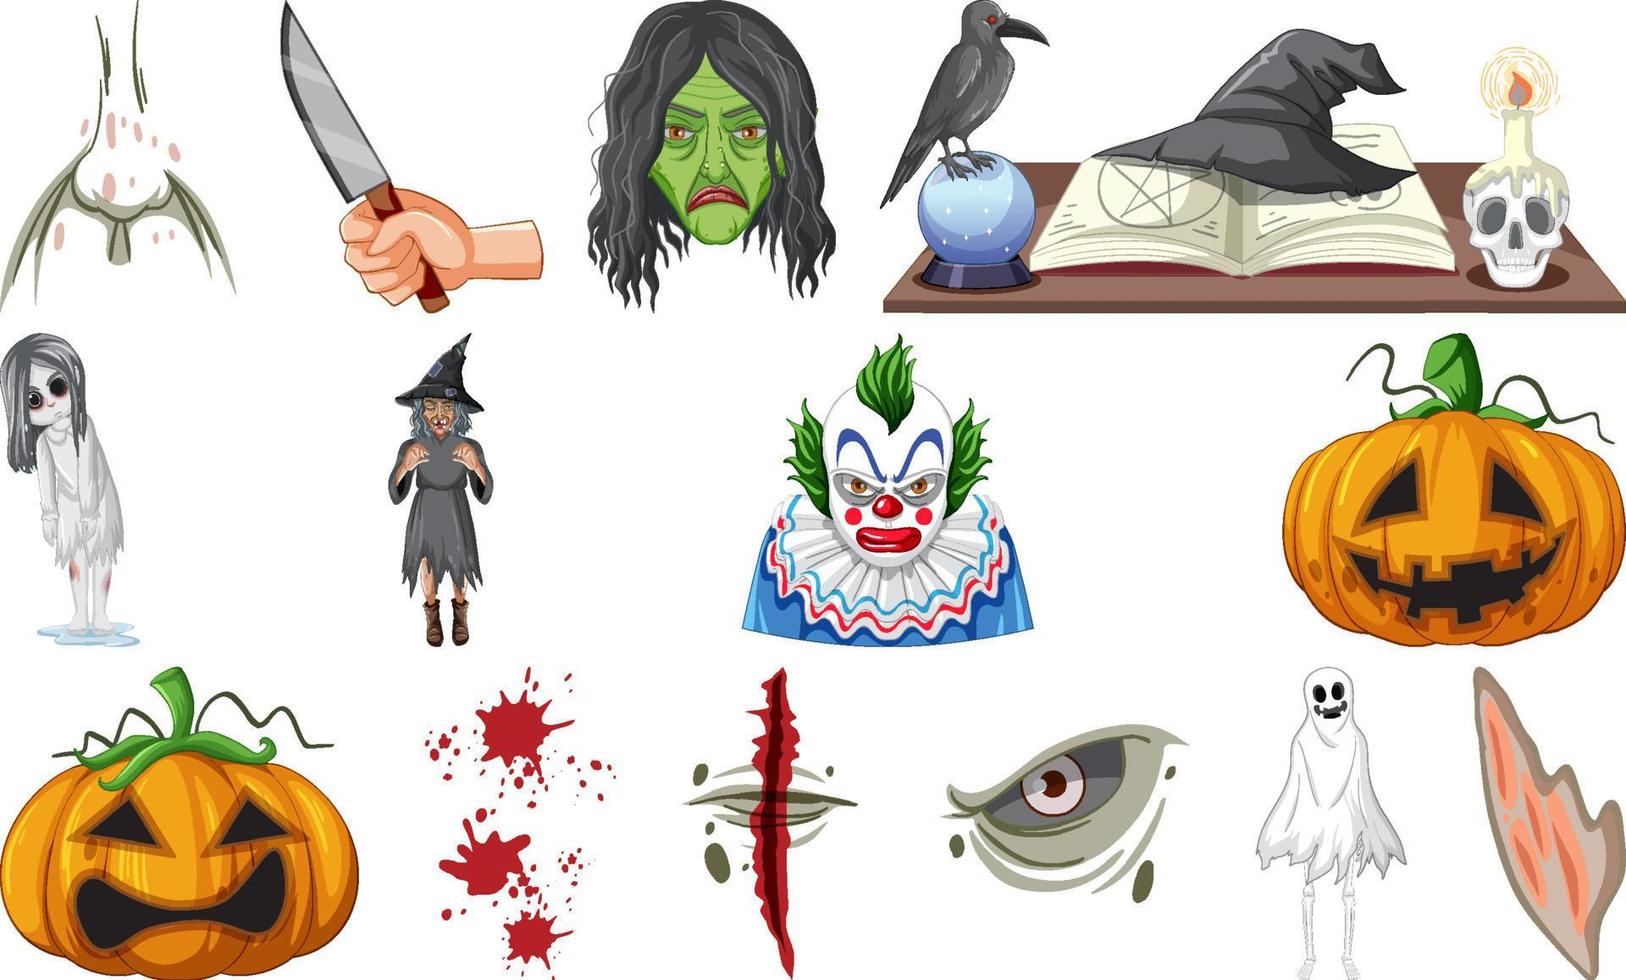 impostato di orrore Halloween oggetti e cartone animato personaggi vettore